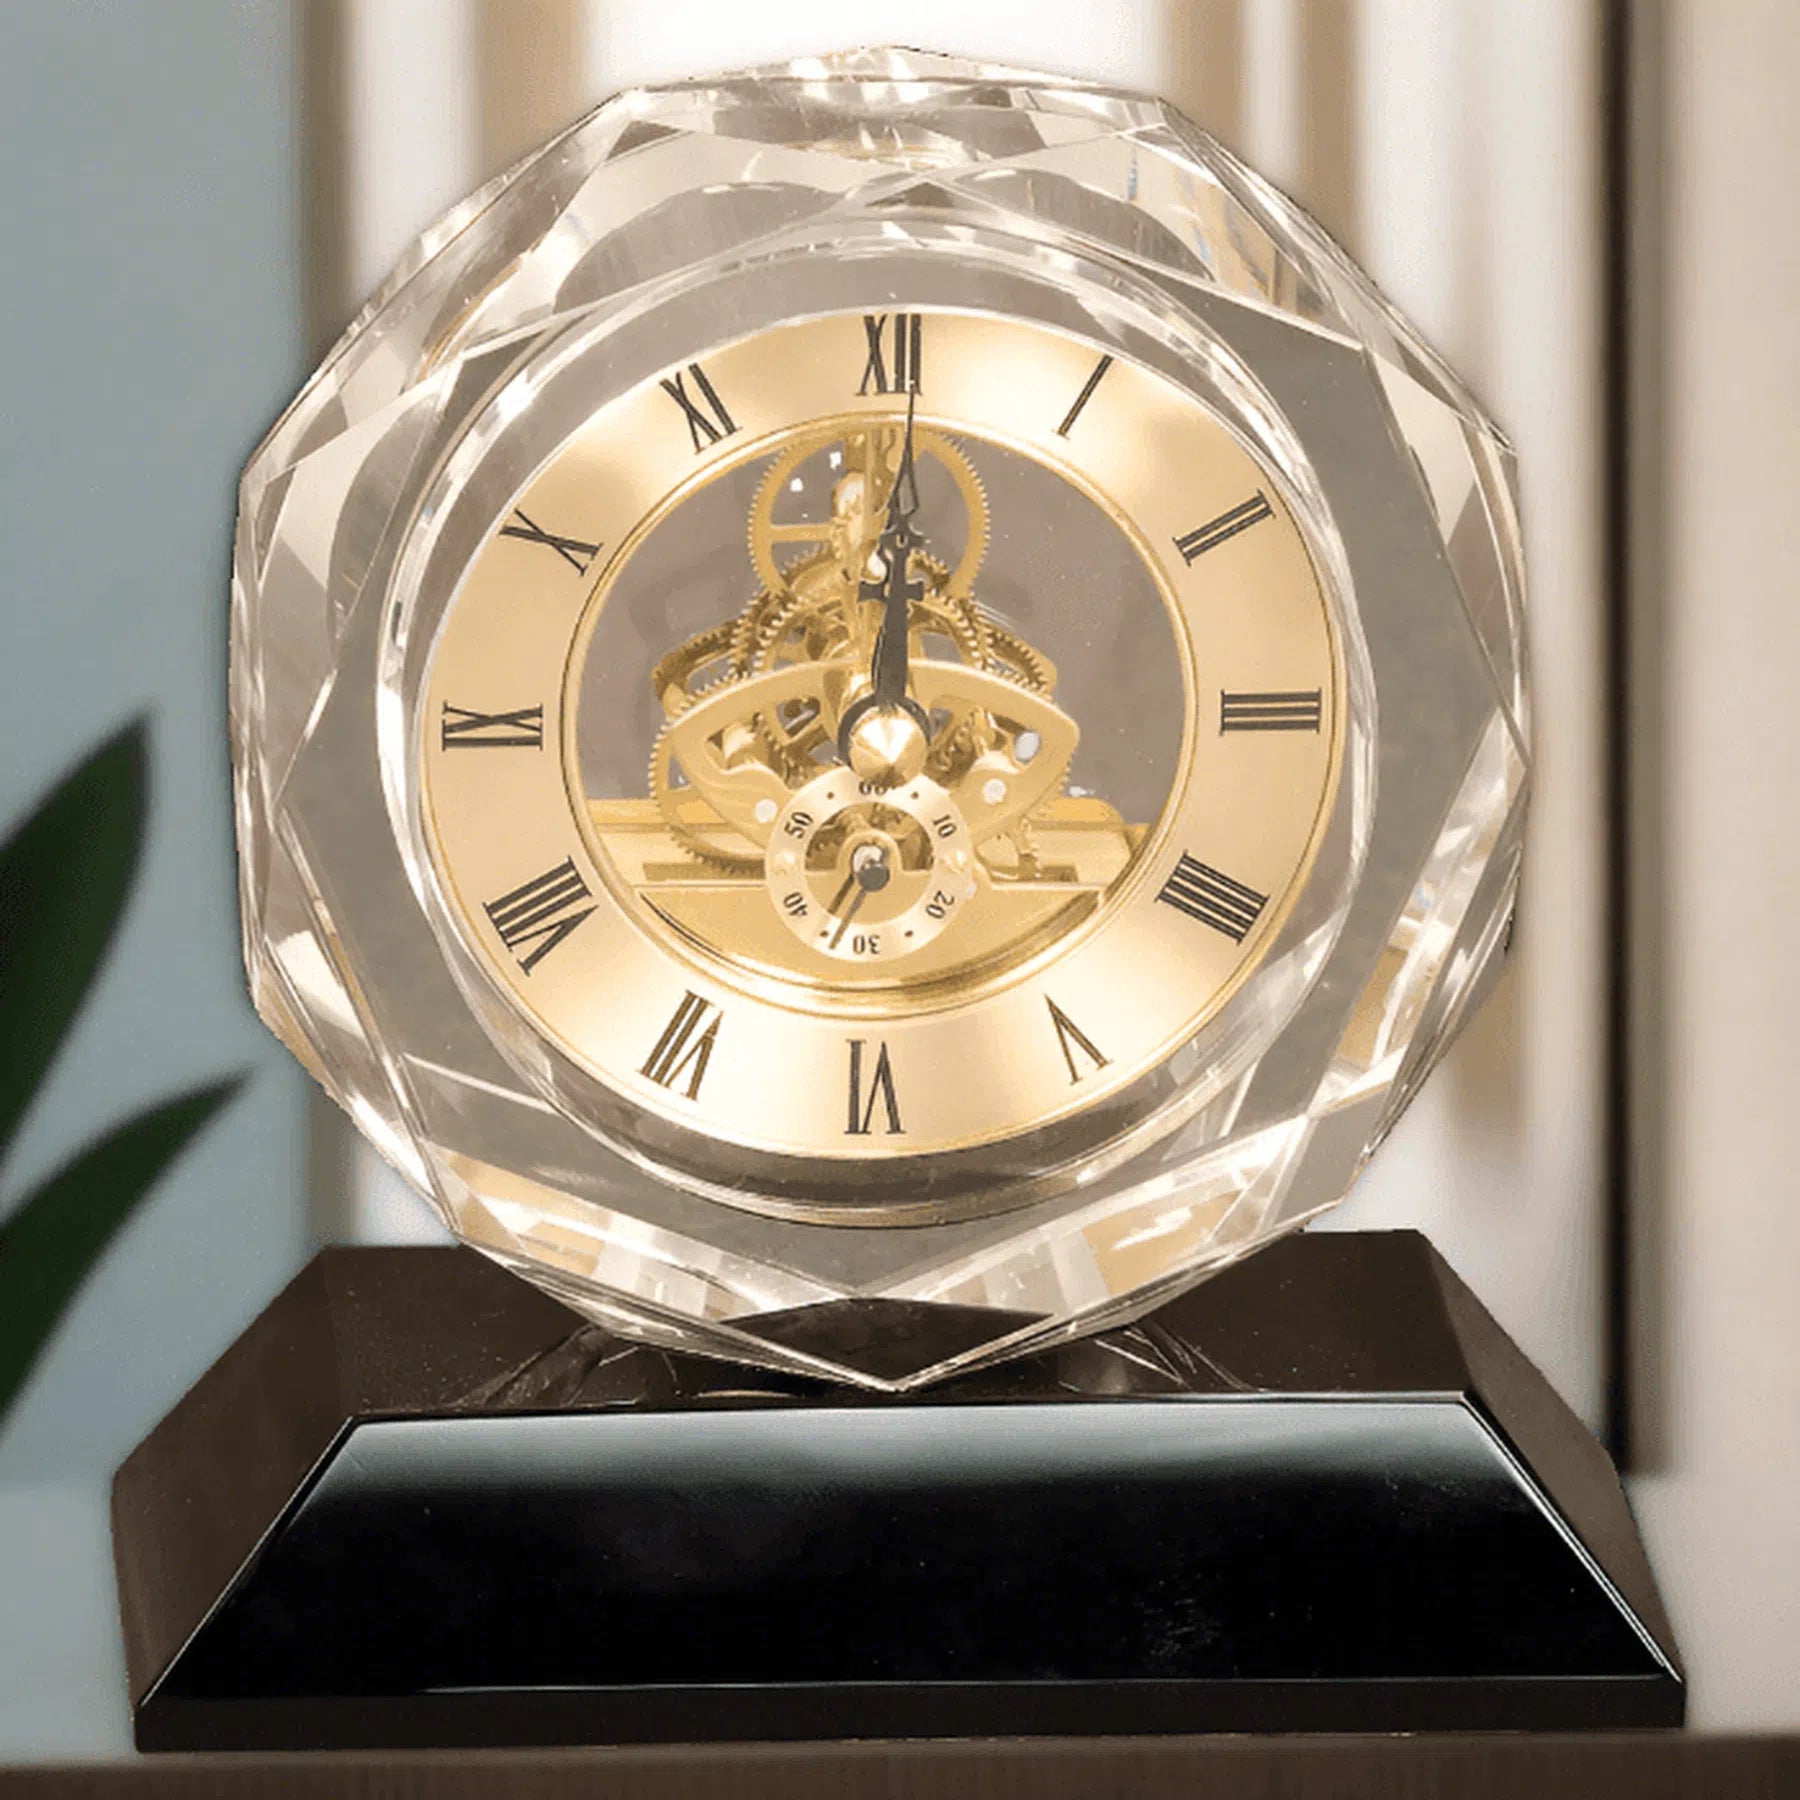 5 3/4" Personalized Crystal Desk Clock on Black Pedestal Base